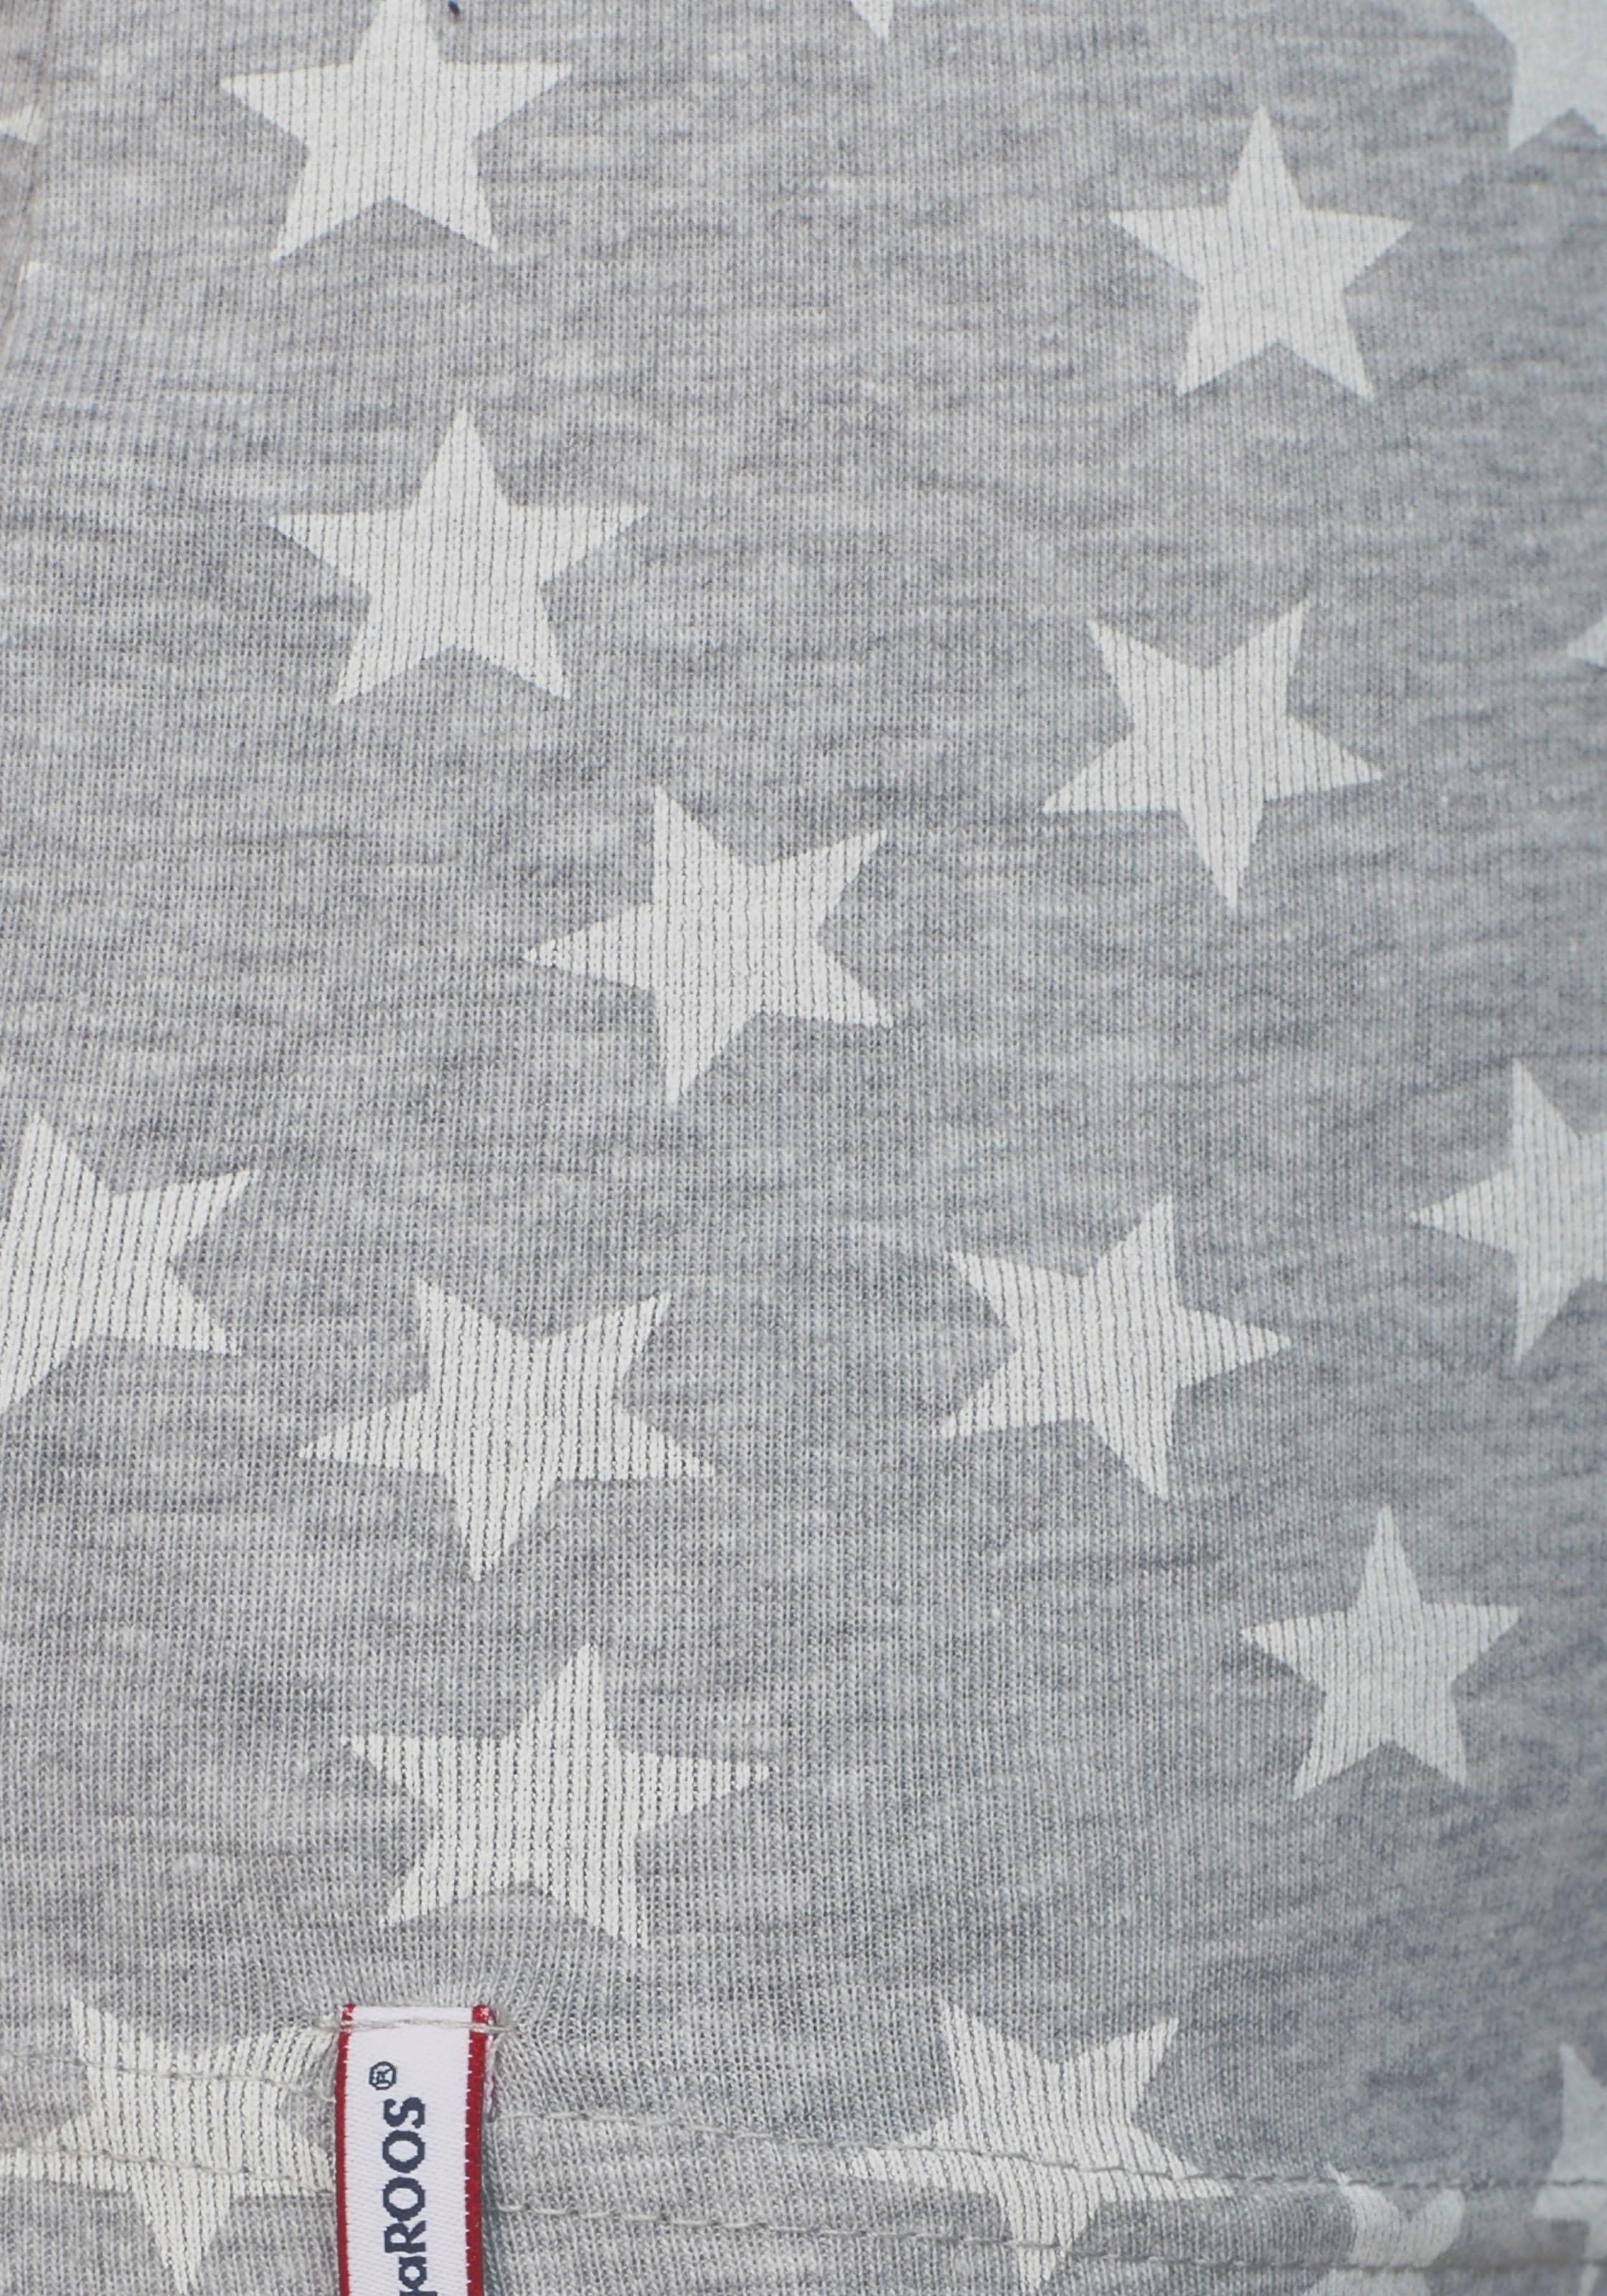 KangaROOS T-Shirt, ♕ bei Sternen bedruckt mit